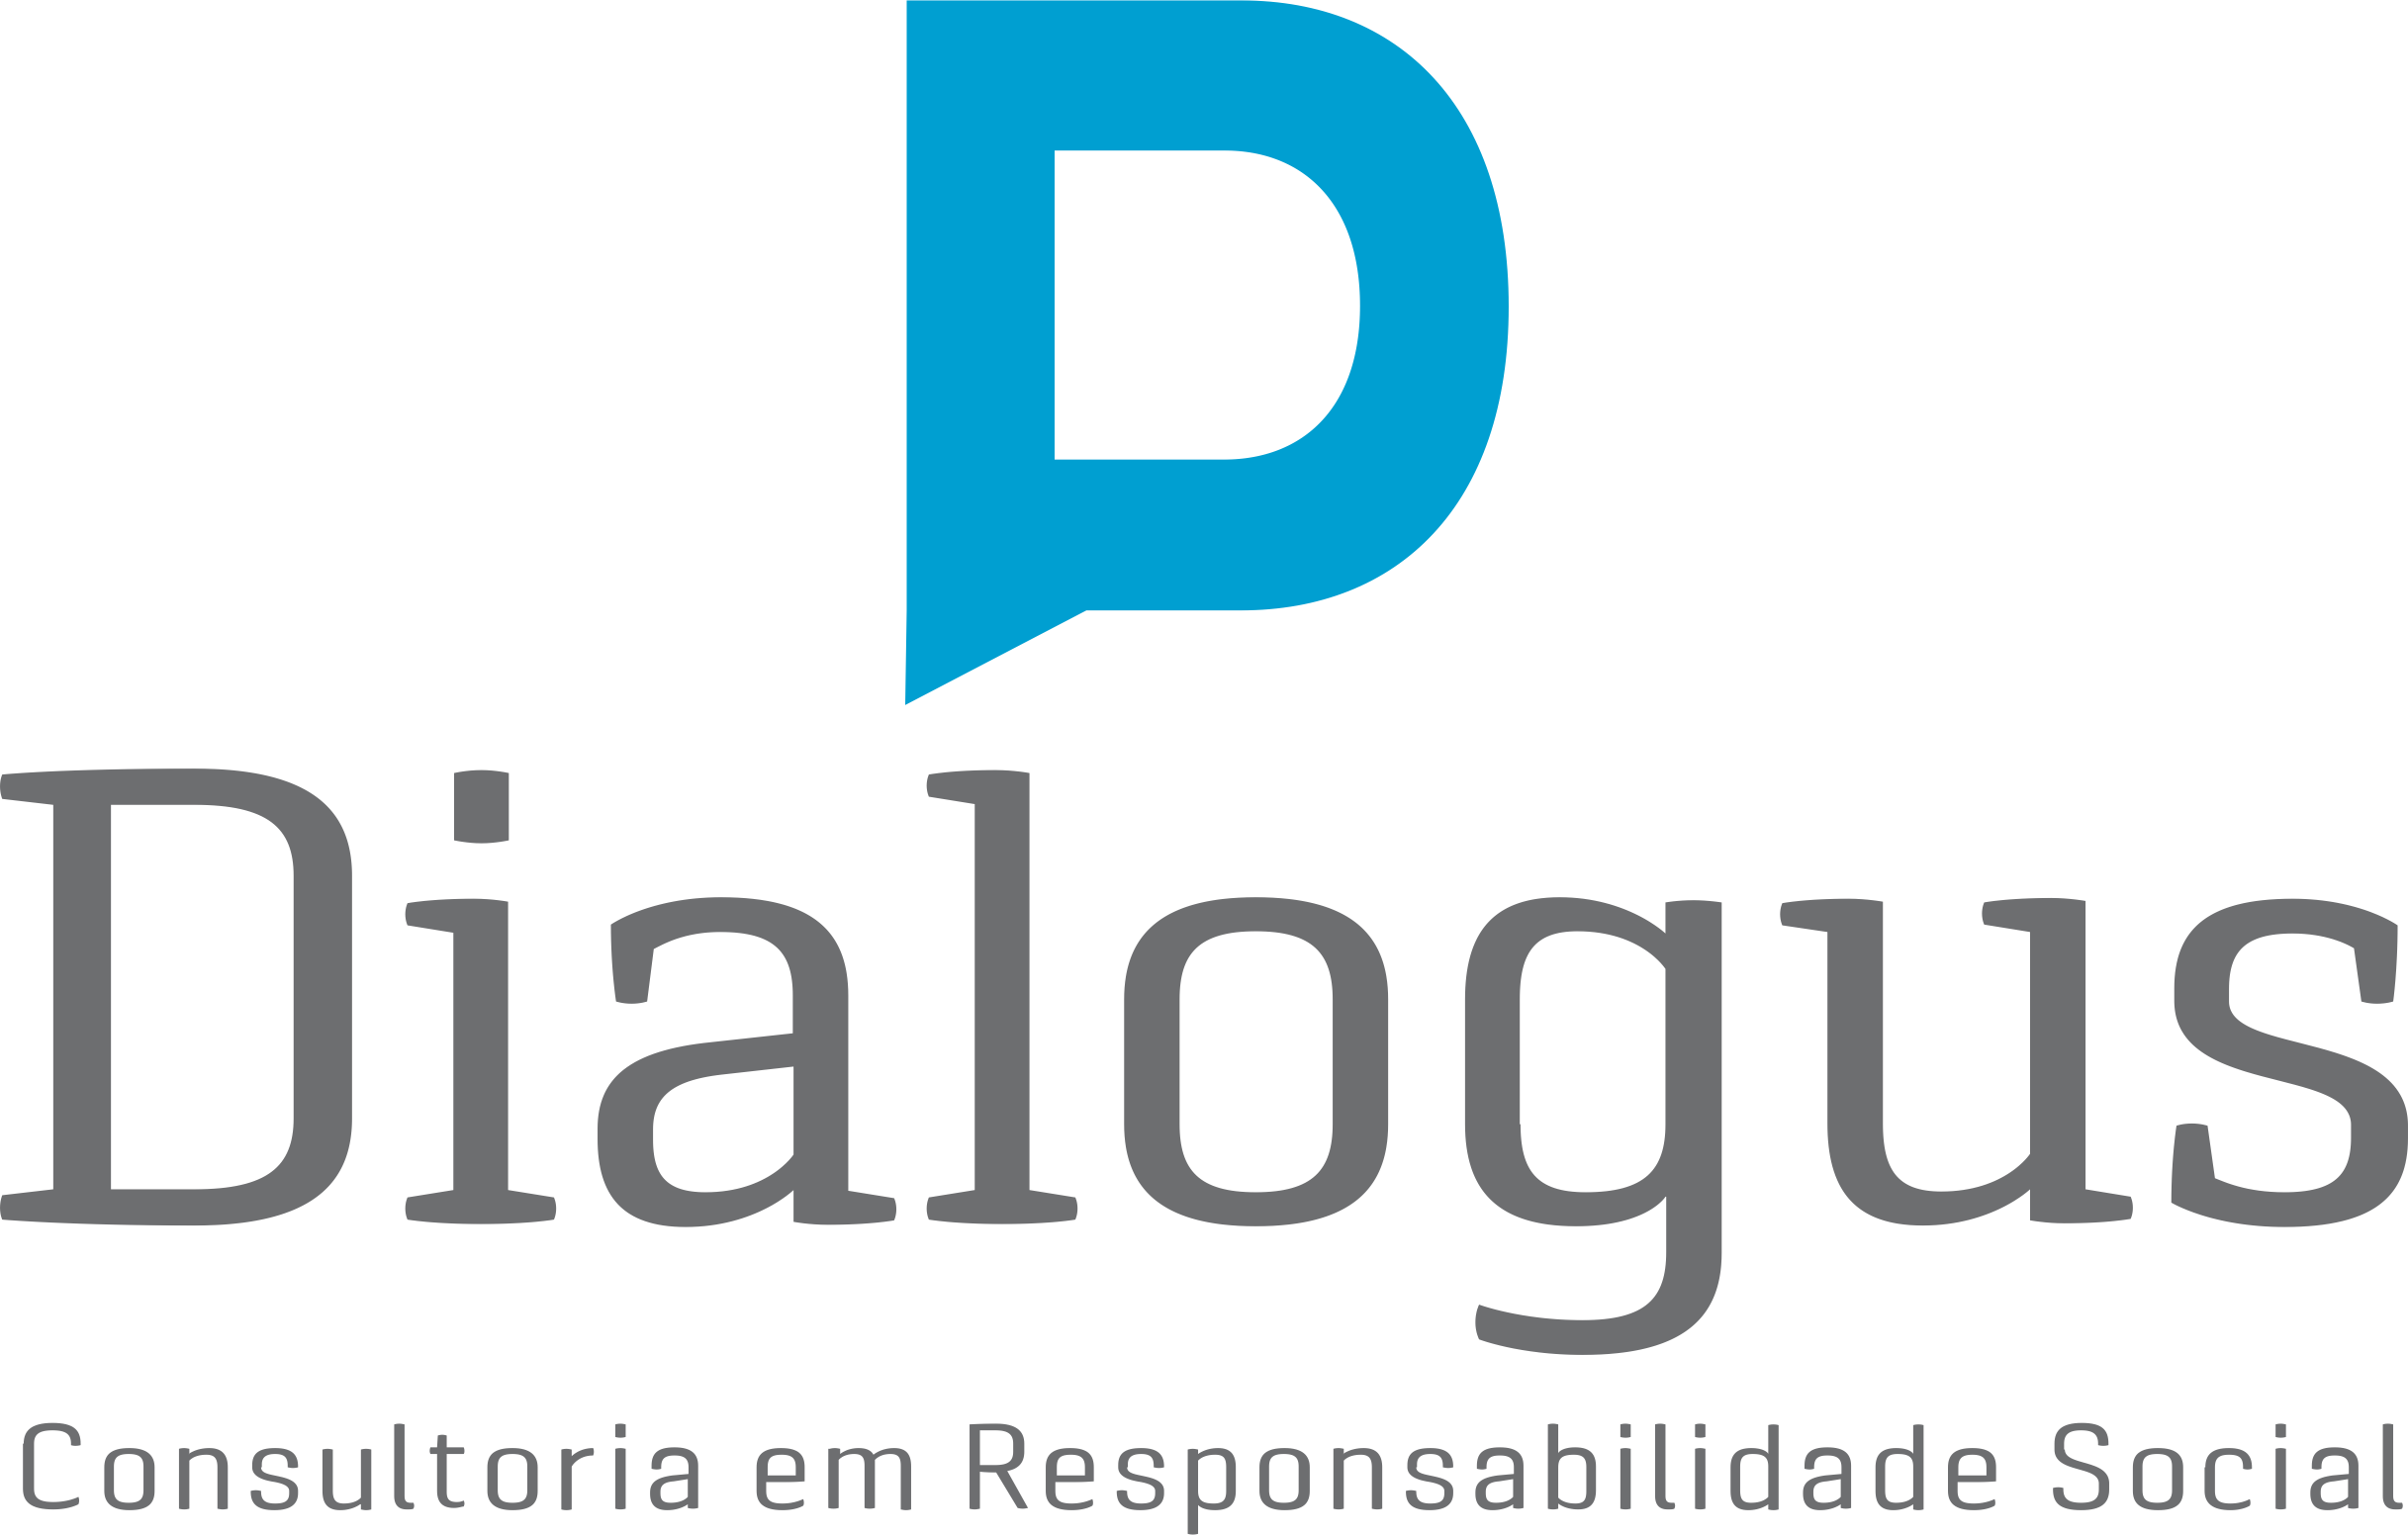 Dialogus Responsabilidade Social - Consultoria - ODS - Objetivos de Desenvolvimento Sustentável - Fortaleza/CE